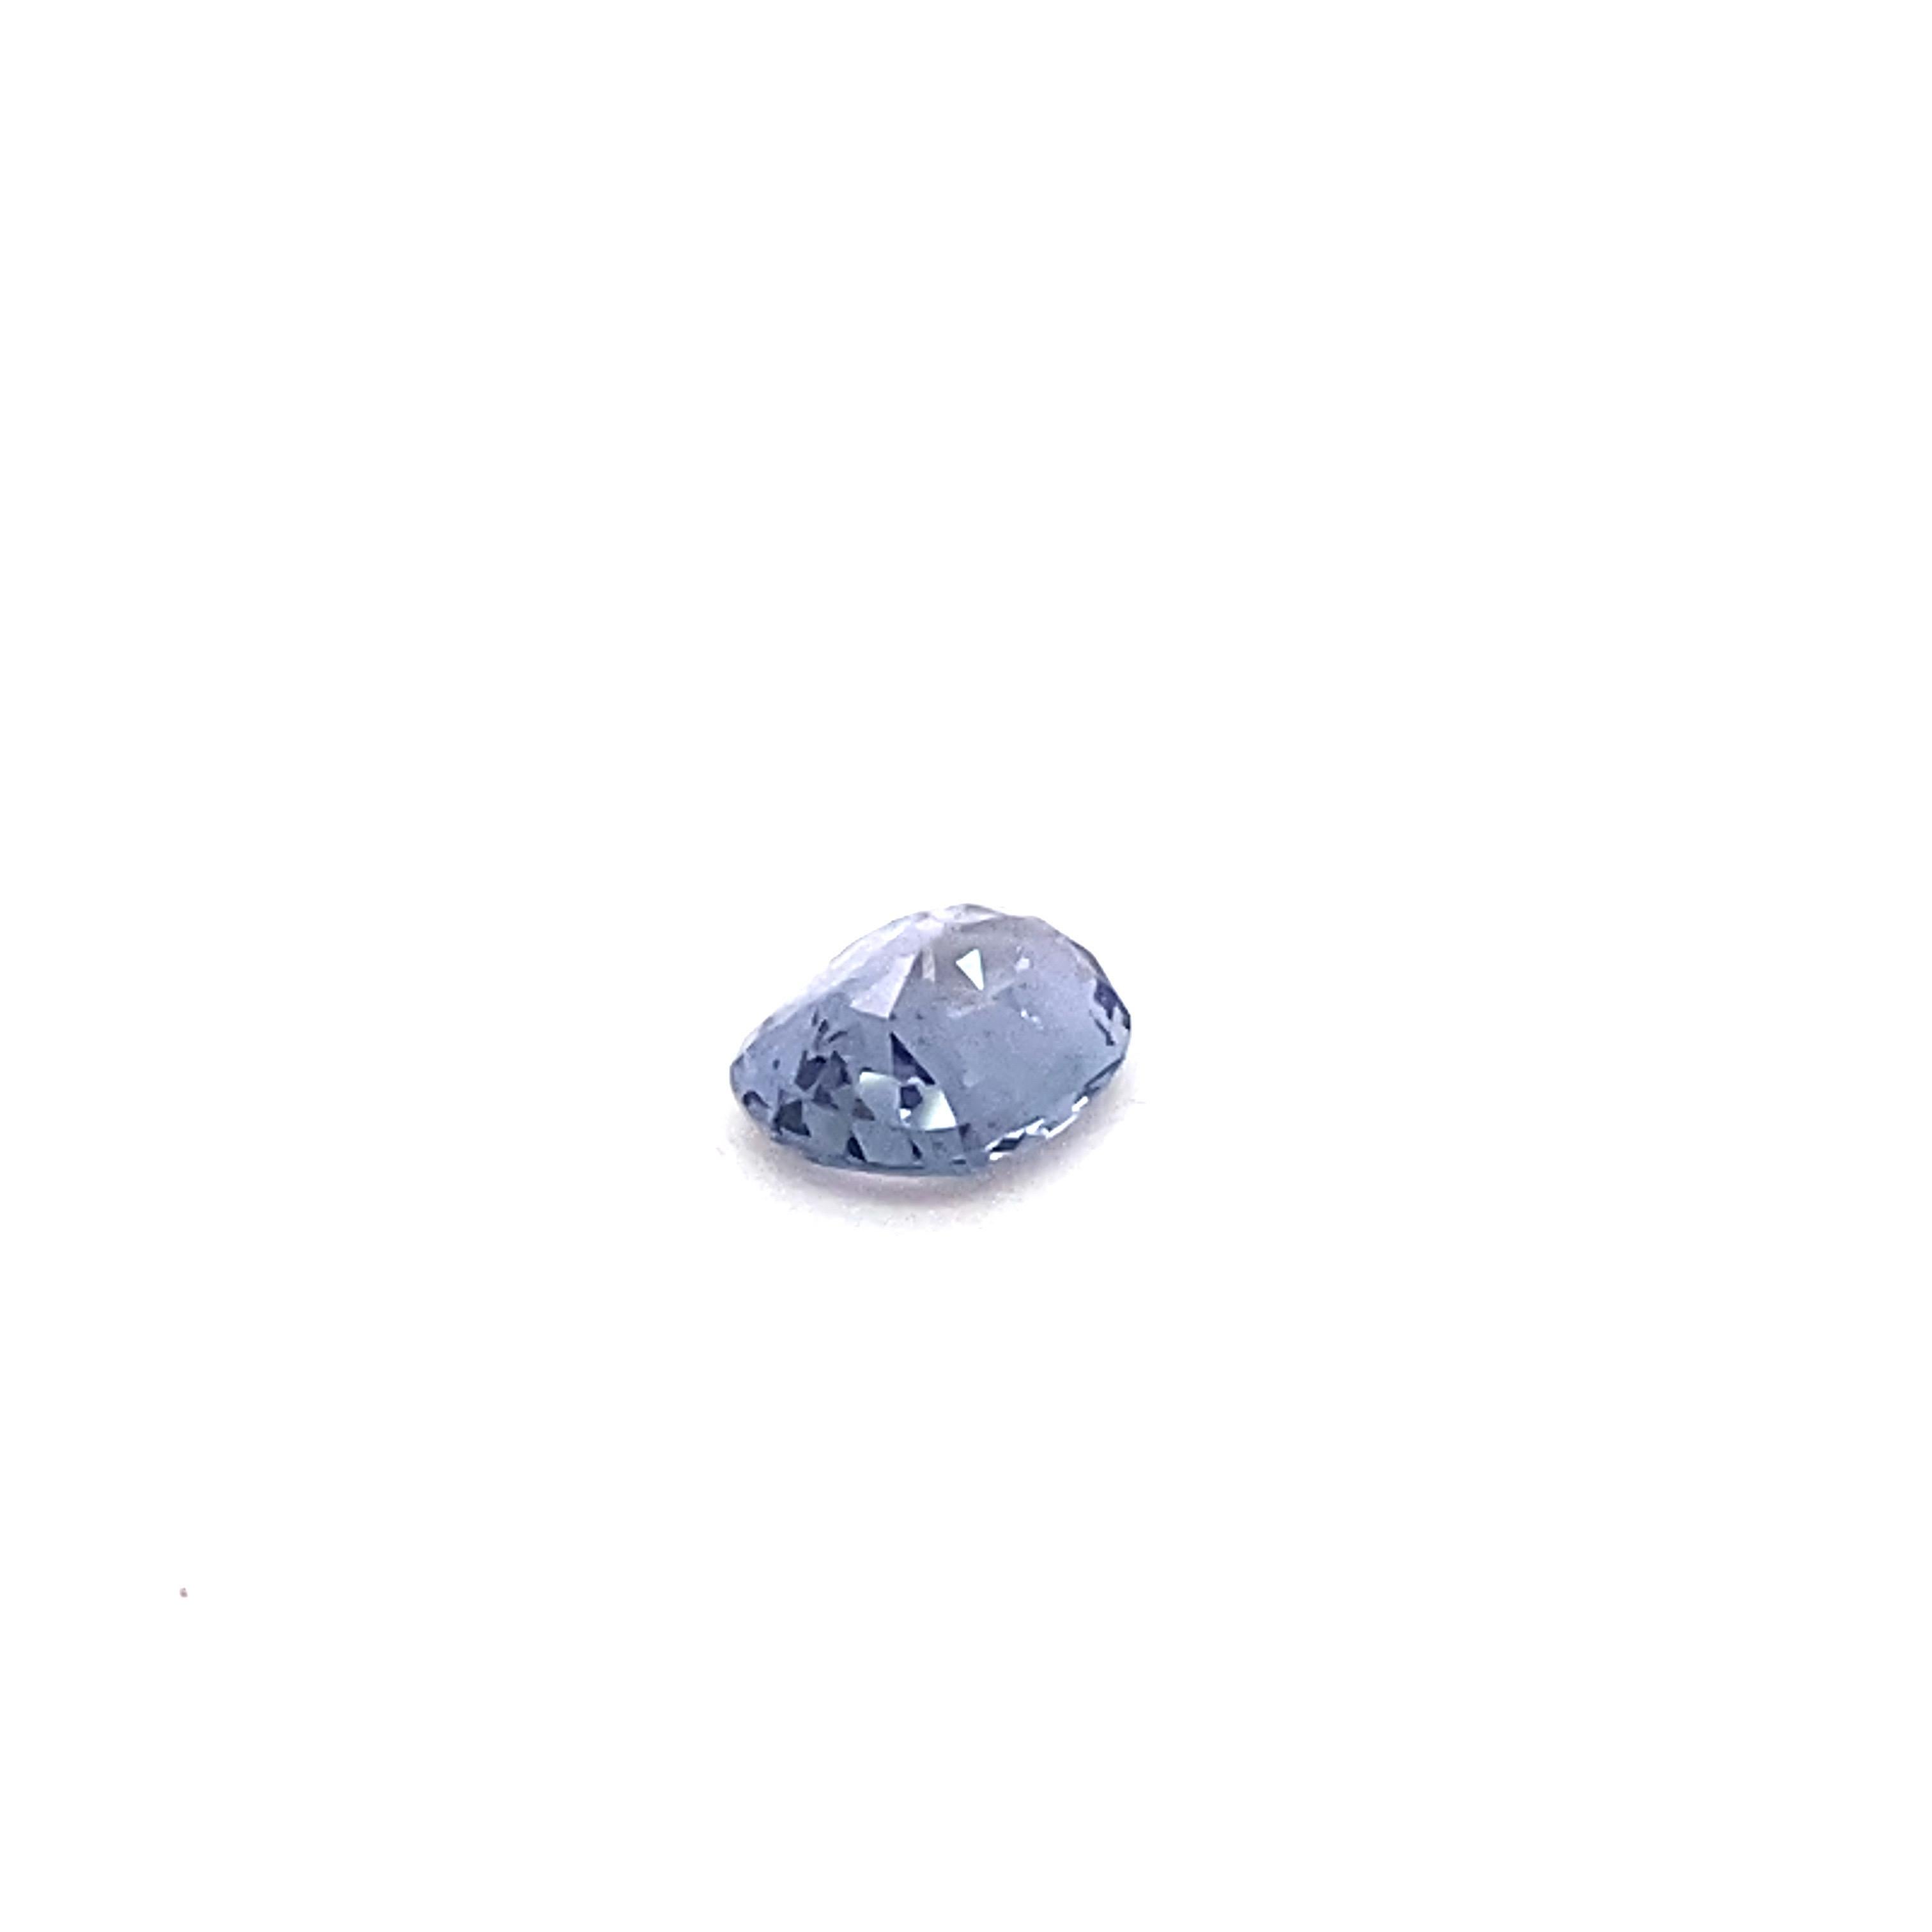 1.6 Carat Oval Shape Natural Violet Spinel Loose Gemstone For Sale 8